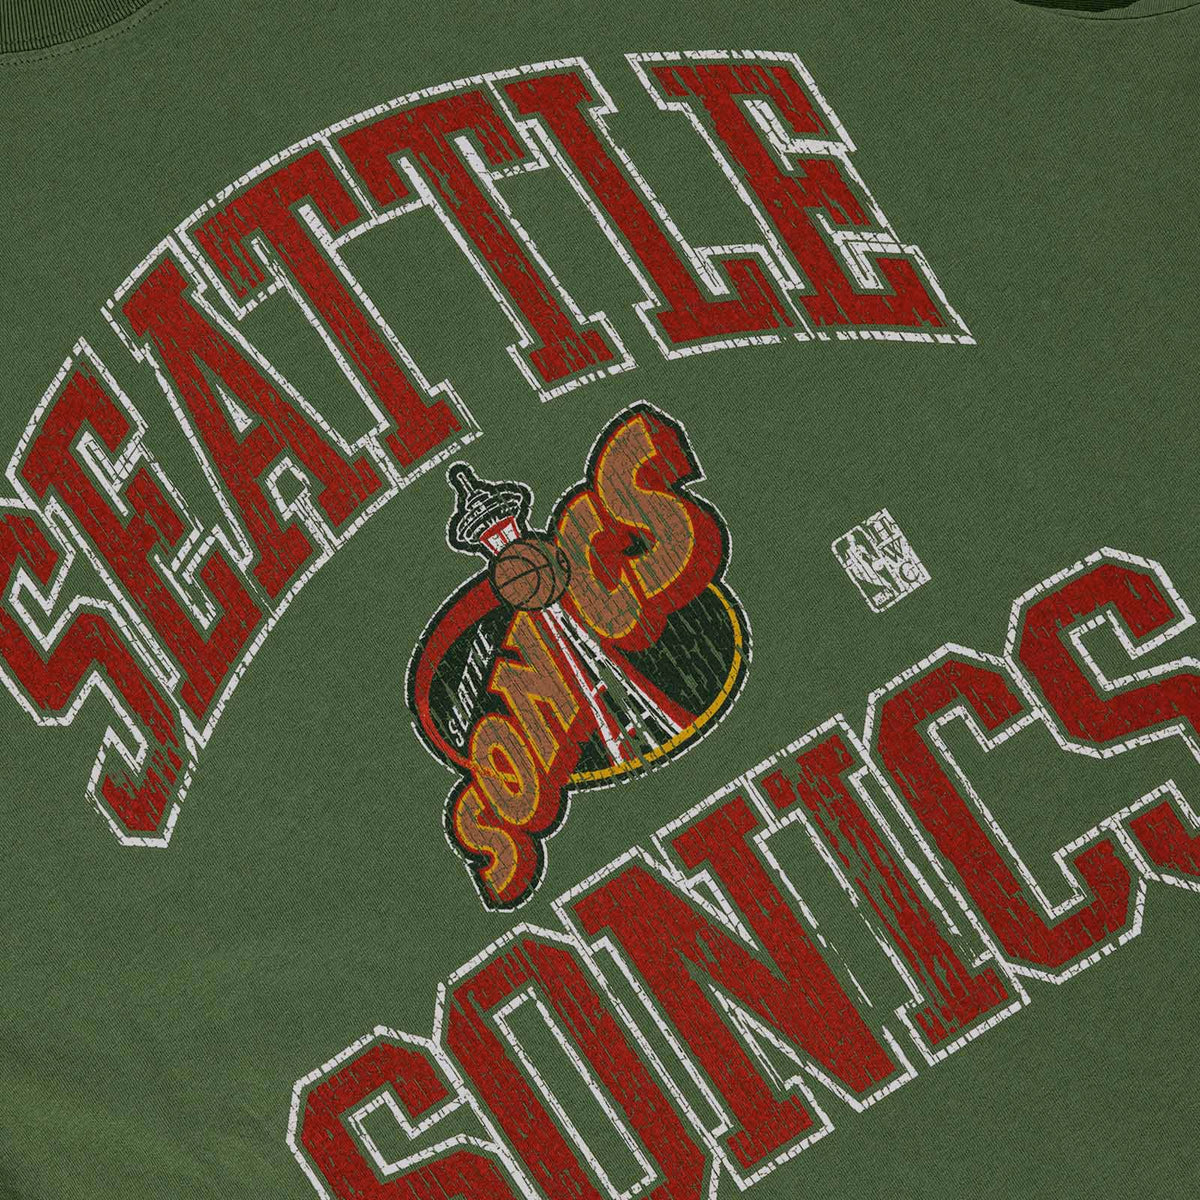 Mitchell & Ness x NBA Seattle Sonics Kemp Courtside T-Shirt